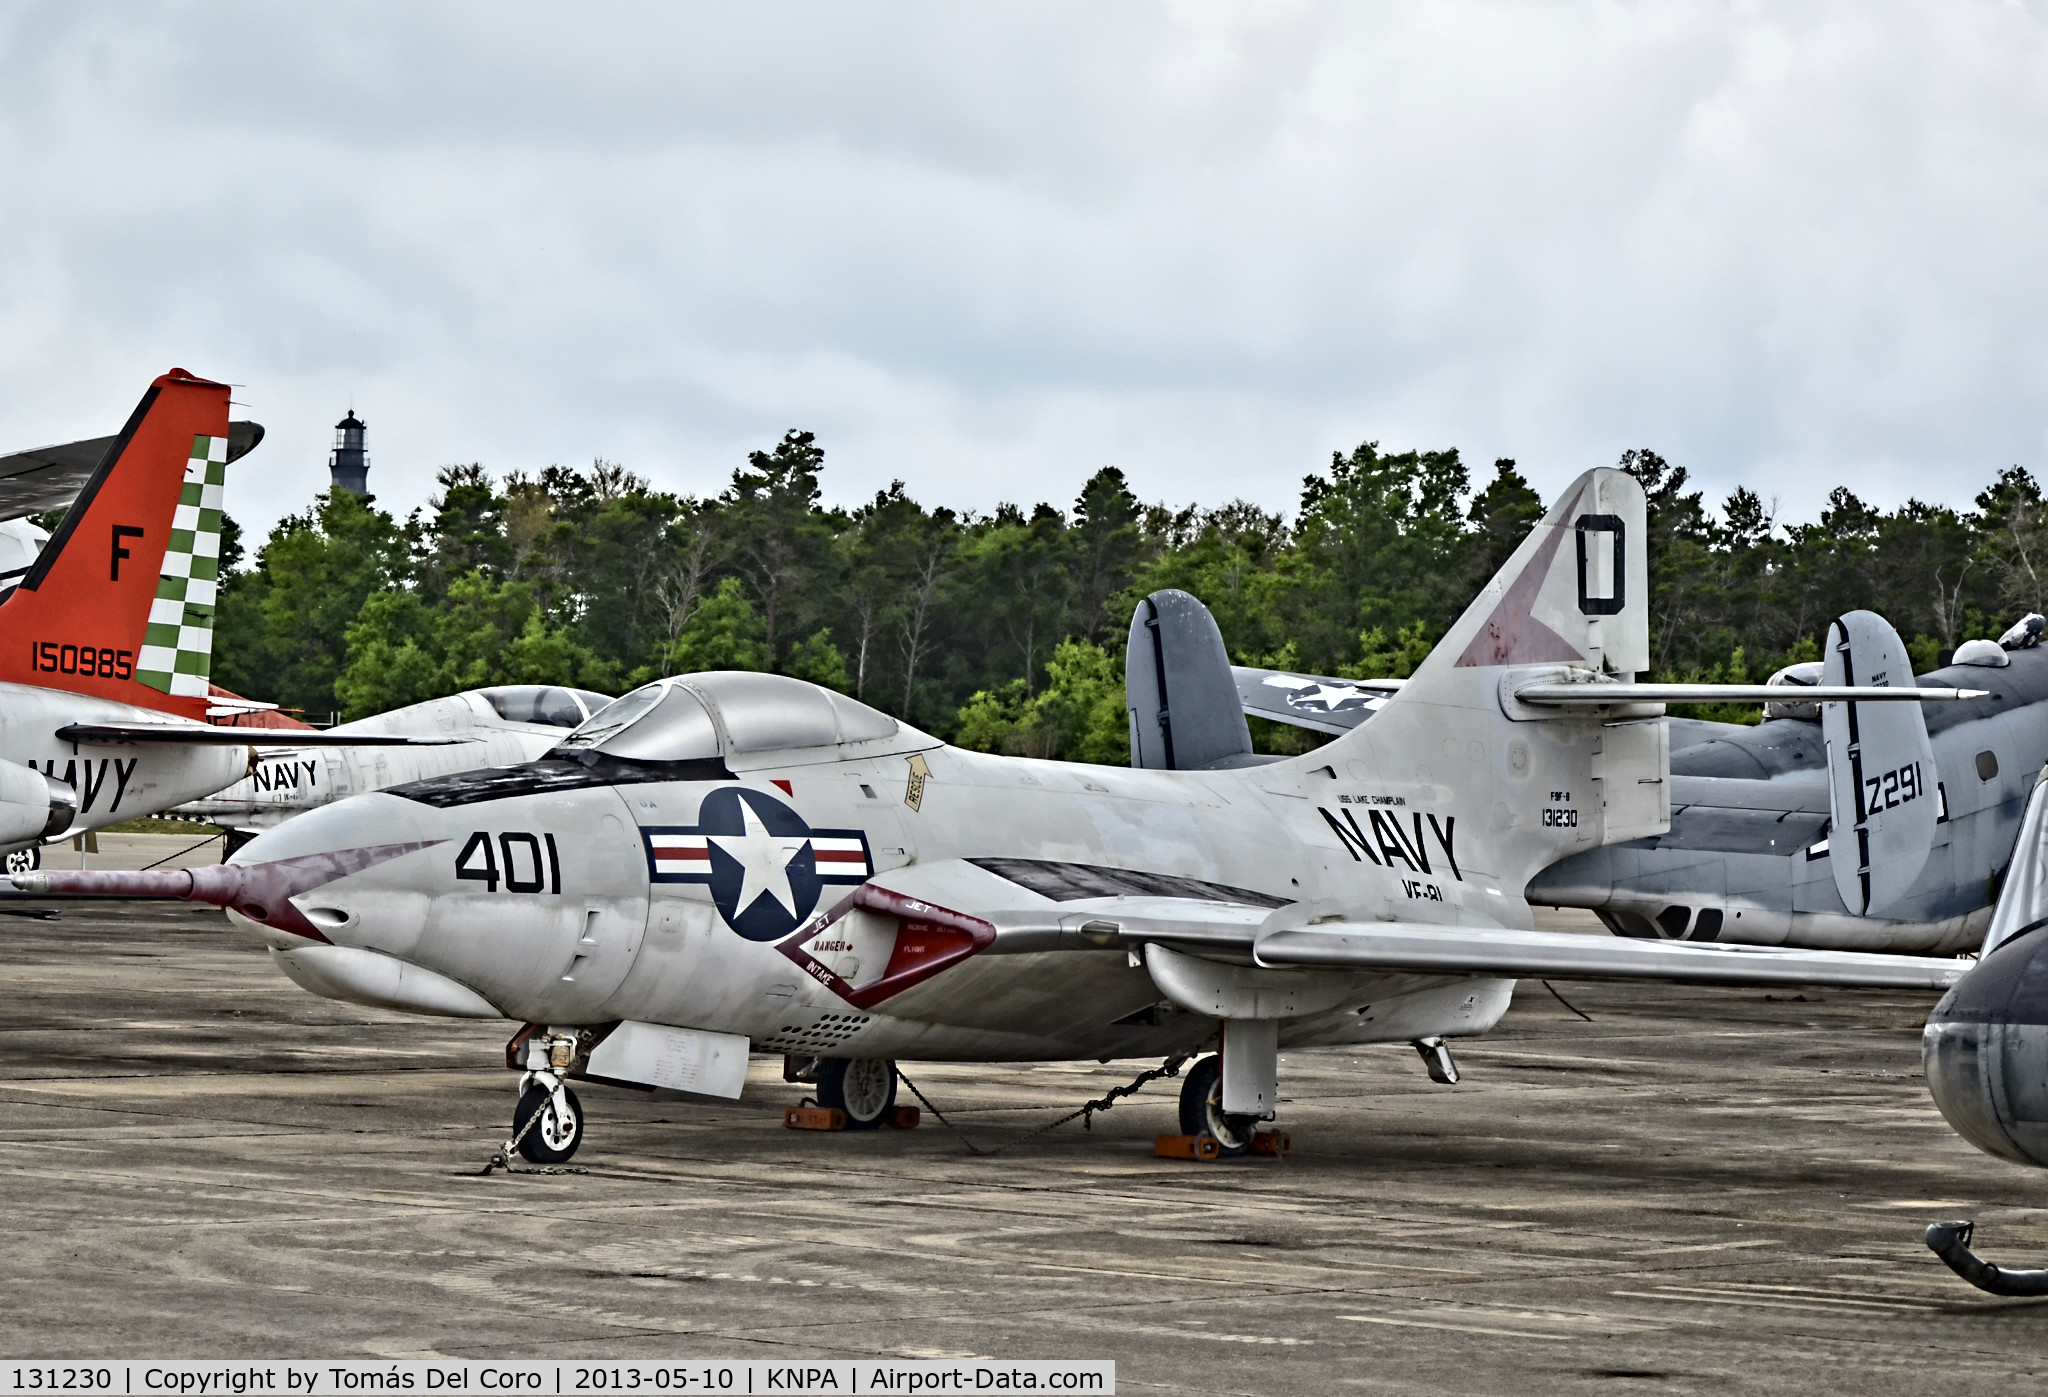 131230, 1954 Grumman F9F-8 Cougar C/N 168C, F9F-8 Cougar BuNo 131230 (C/N 168C)

National Naval Aviation Museum
TDelCoro
May 10, 2013